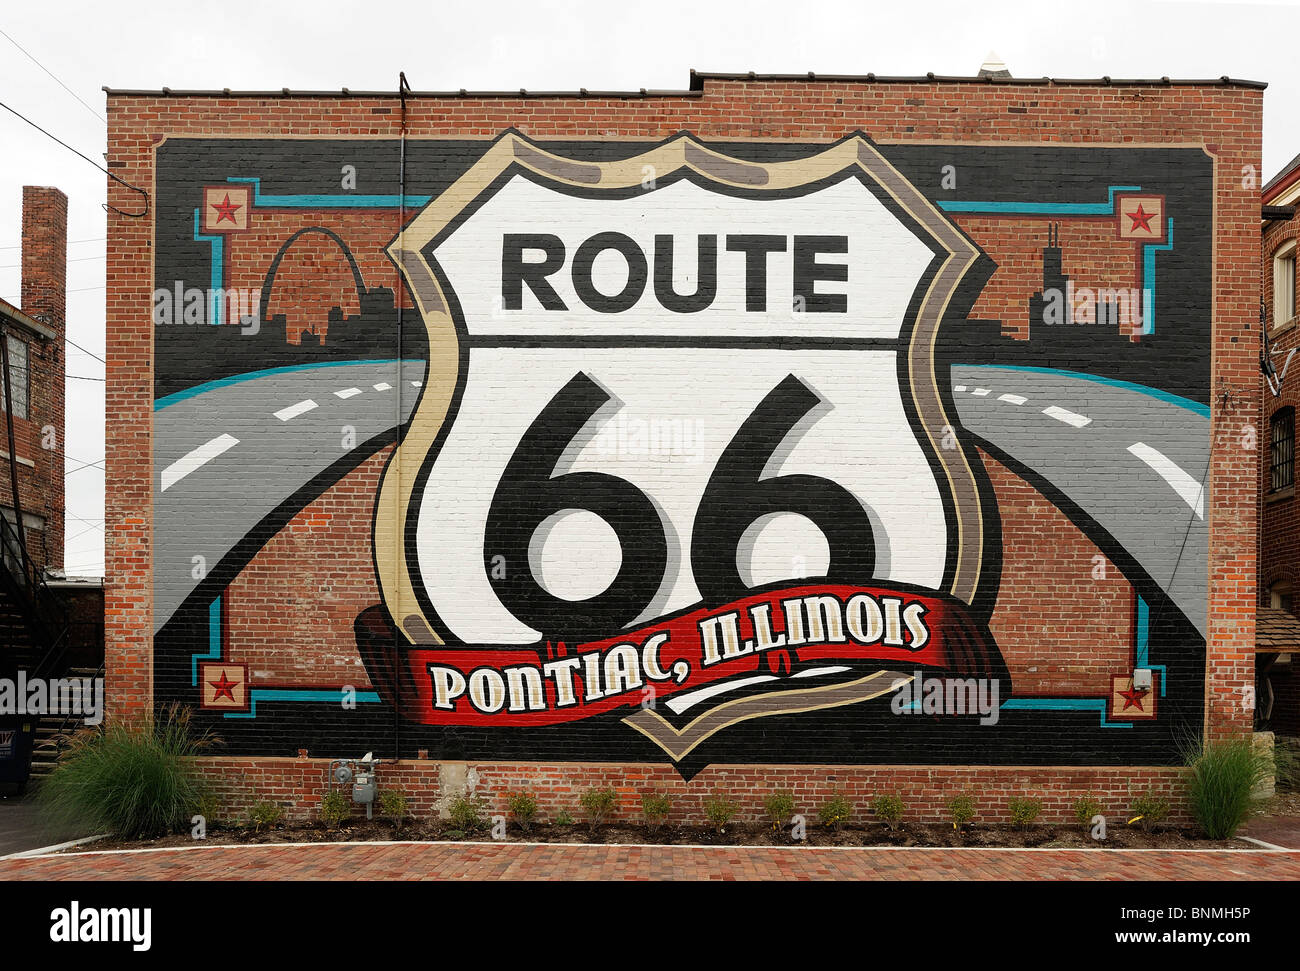 Route 66 Route 66 murales nostalgie Pontiac Montana USA Amérique du Nord Amérique symbole plaque Banque D'Images